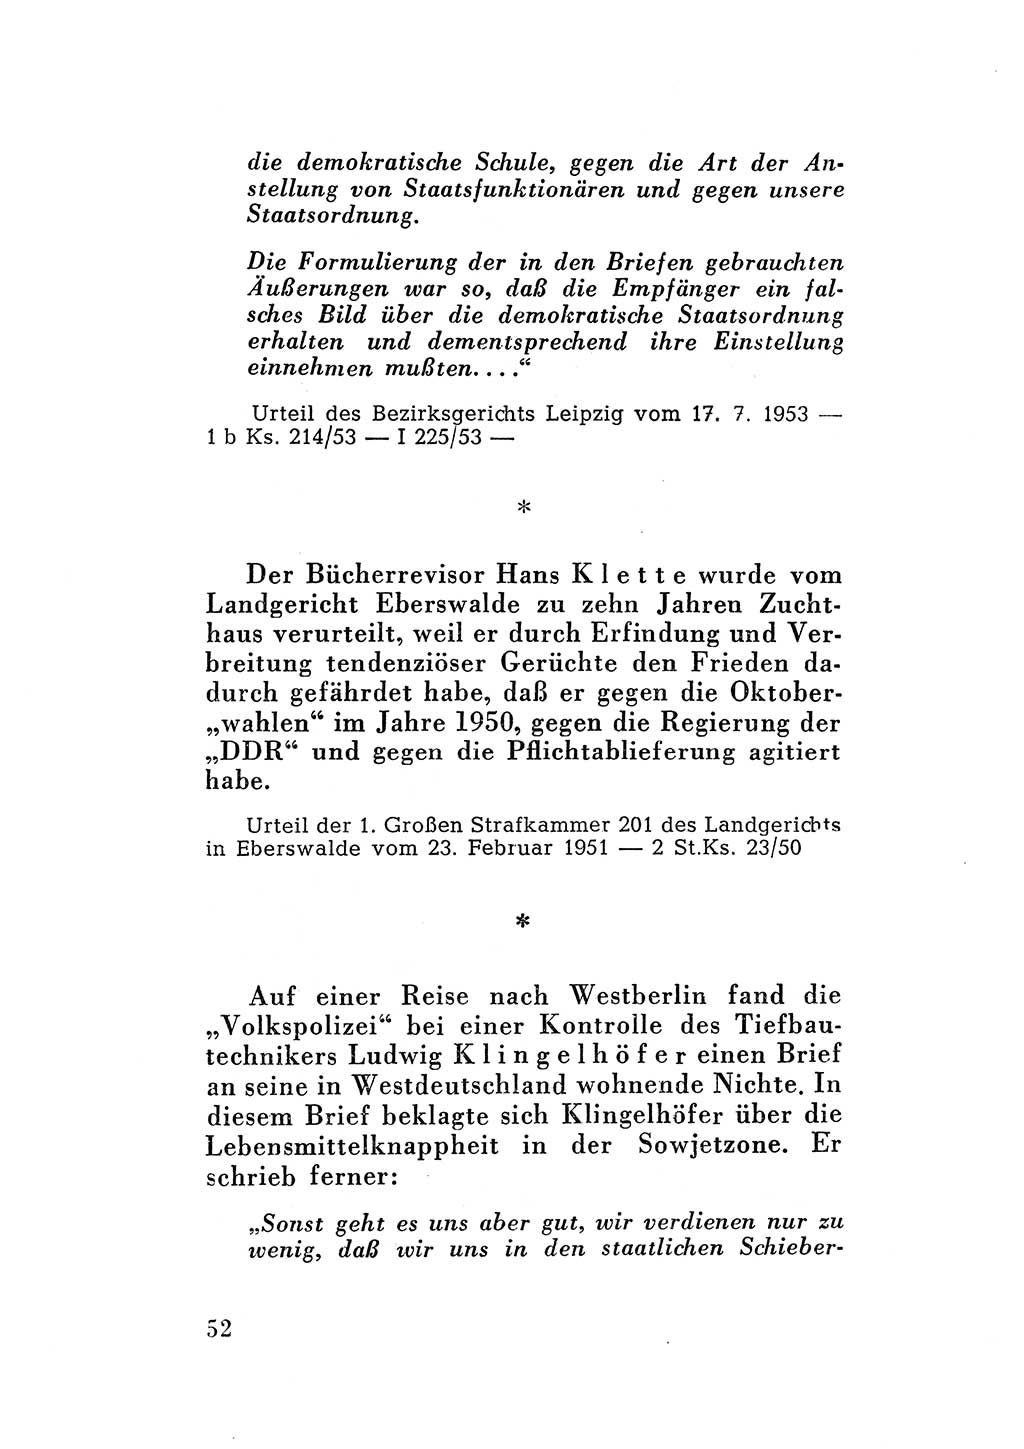 Katalog des Unrechts, Untersuchungsausschuß Freiheitlicher Juristen (UfJ) [Bundesrepublik Deutschland (BRD)] 1956, Seite 52 (Kat. UnR. UfJ BRD 1956, S. 52)